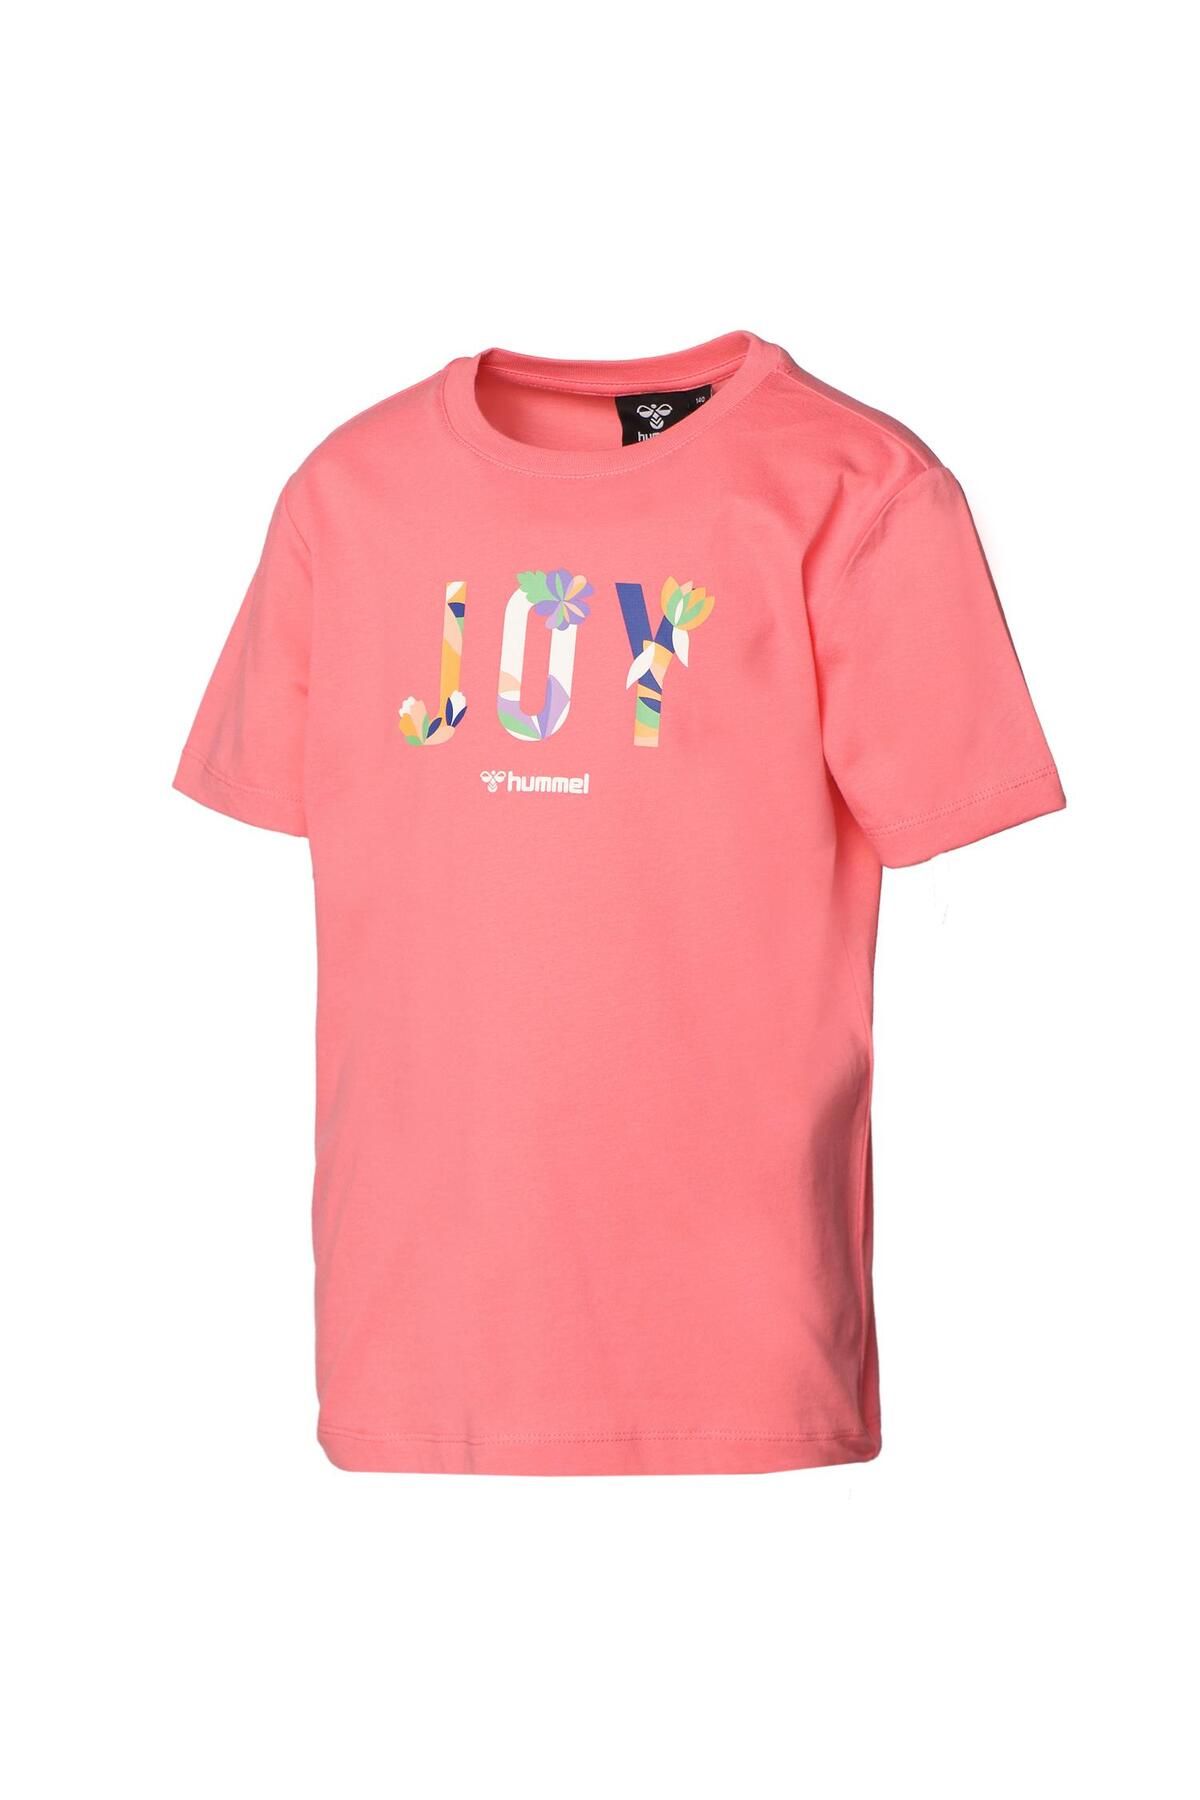 hummel Kız Çocuk Aery Pembe T-shirt 911625-2224